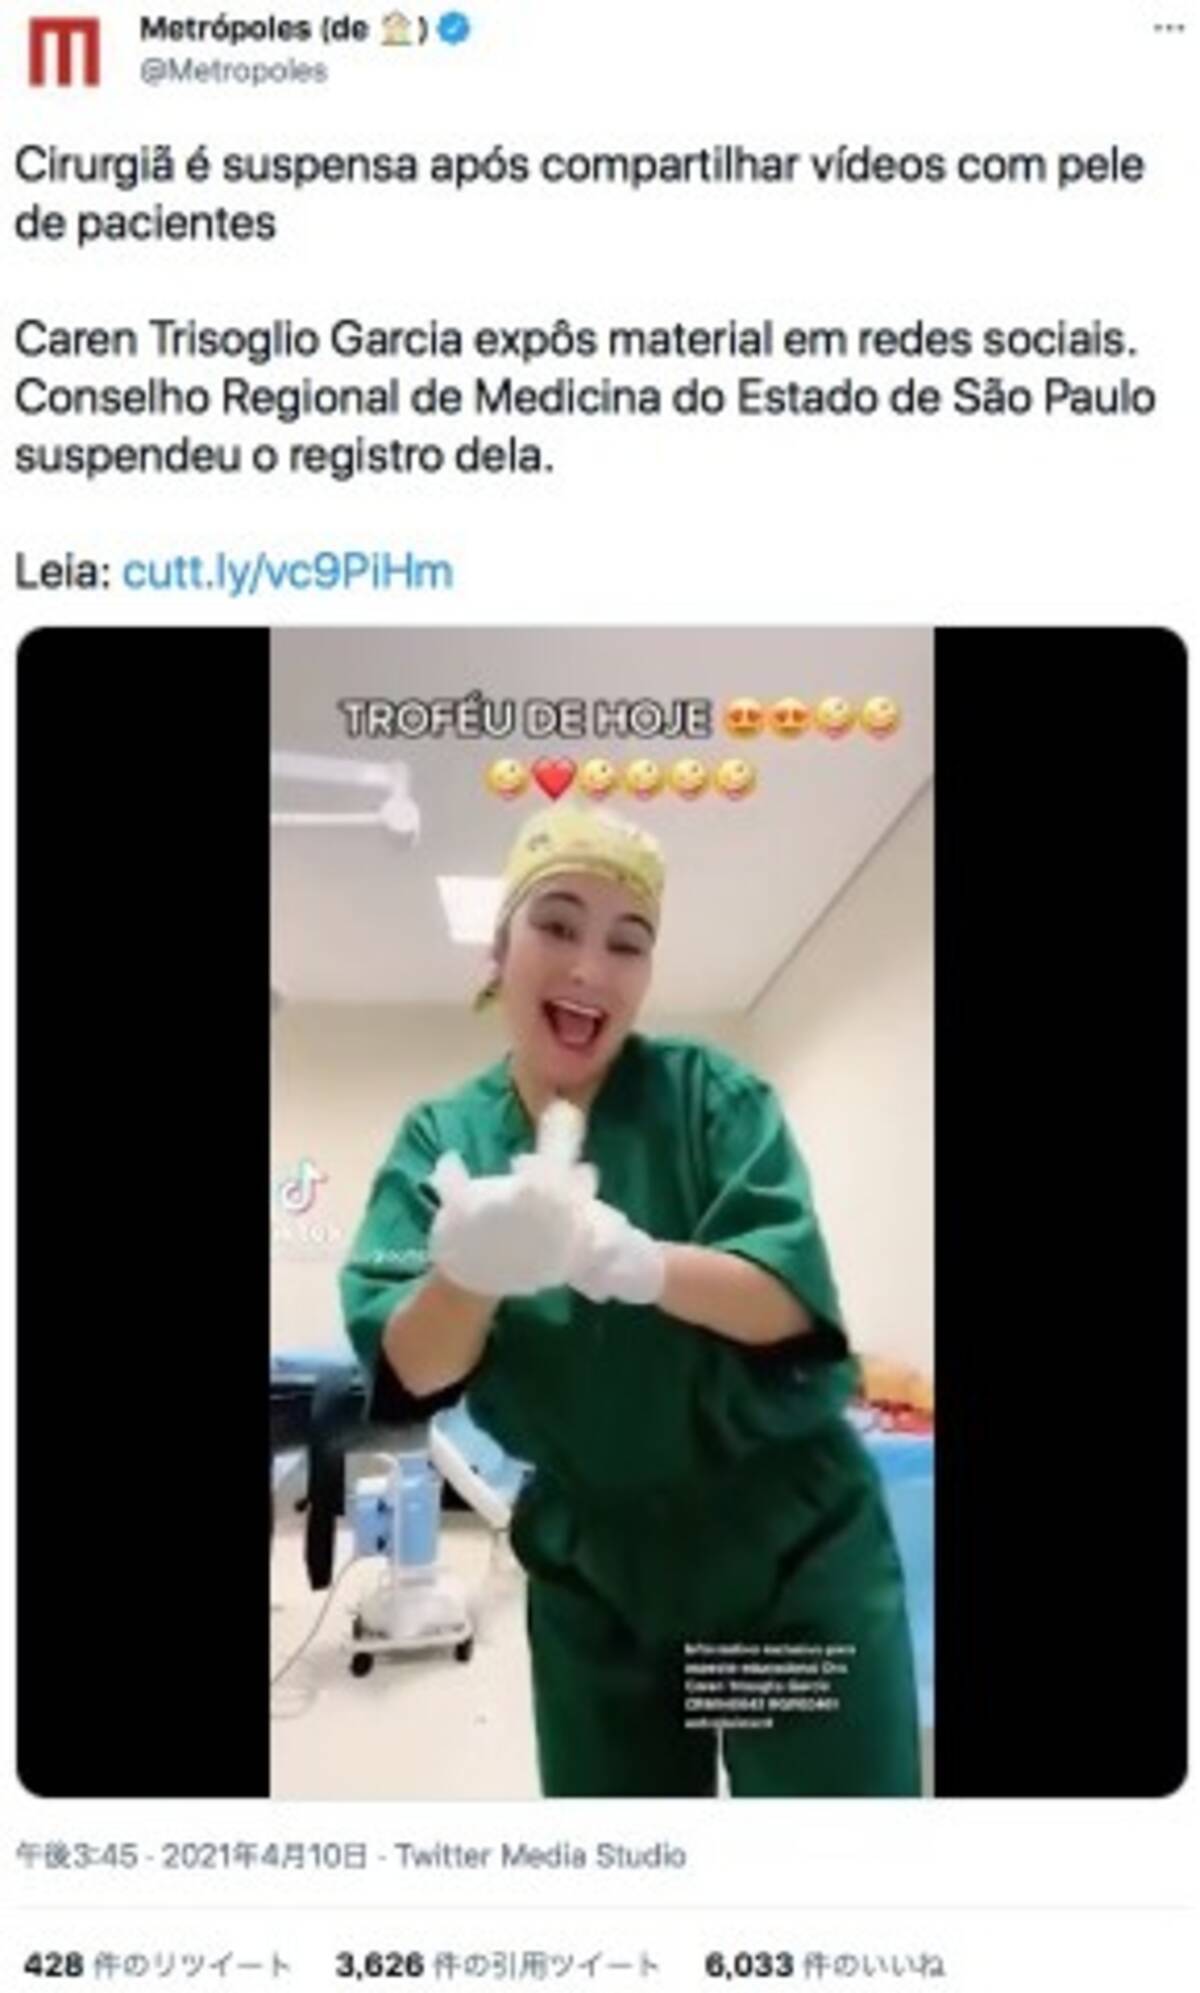 吸引した患者の脂肪を手にダンスする動画をsnsに投稿した美容外科医 医師免許はく奪の可能性 ブラジル 動画あり 21年4月16日 エキサイトニュース